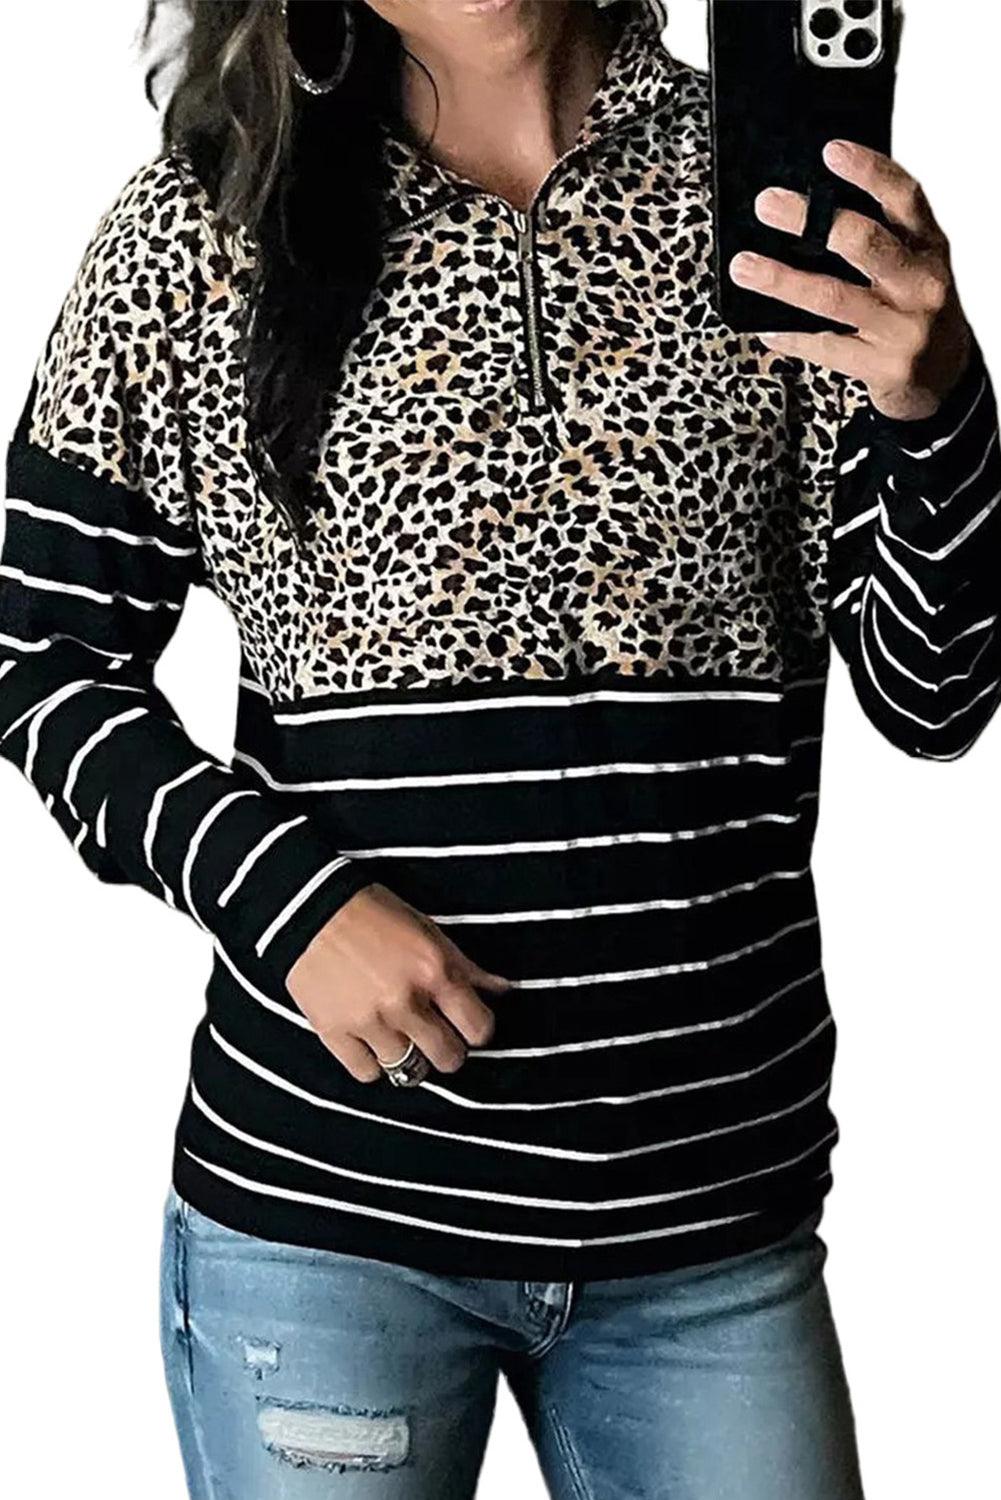 Striped Zipper Pullover Sweatshirt - L & M Kee, LLC